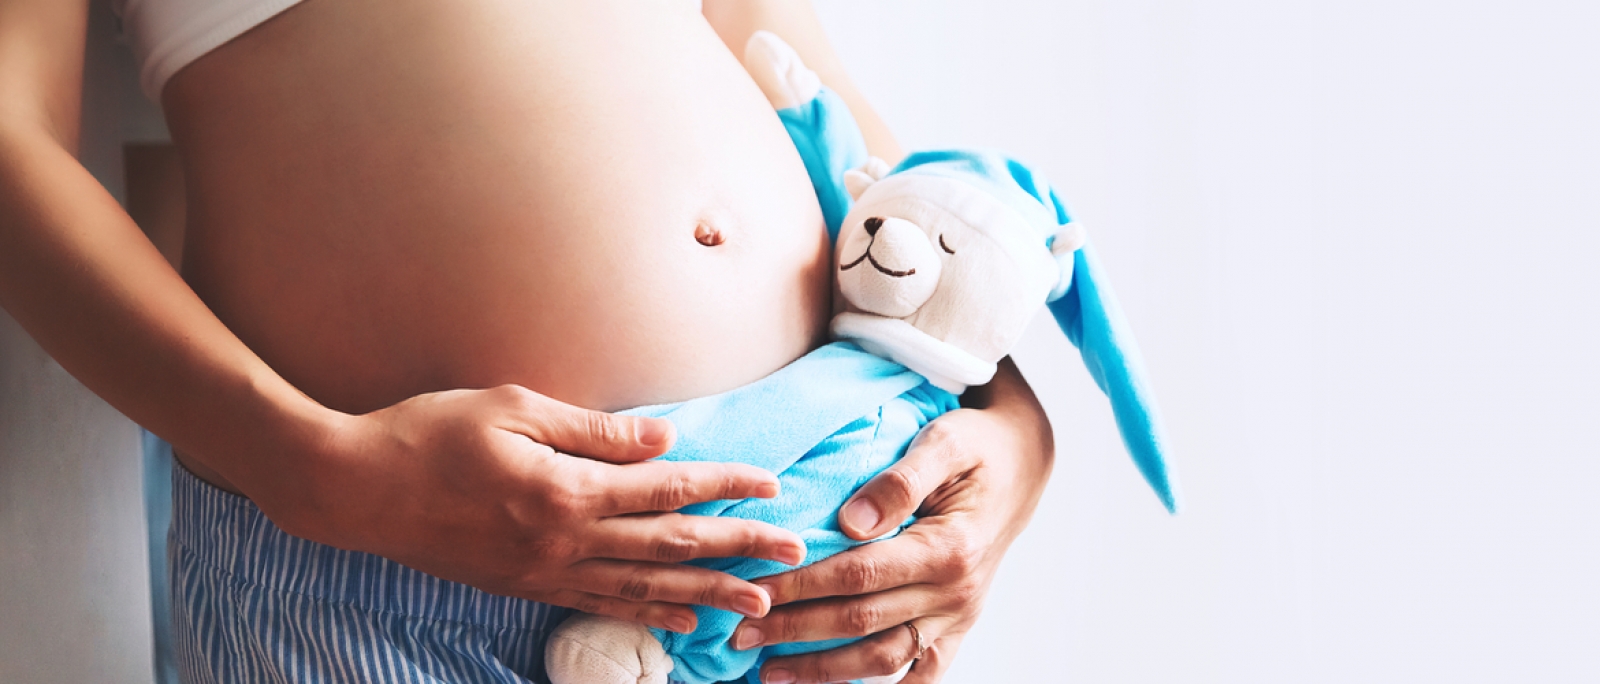 Assembleia Legislativa da Paraíba aprova projetos de proteção à mulher e prevenção à gravidez na adolescência